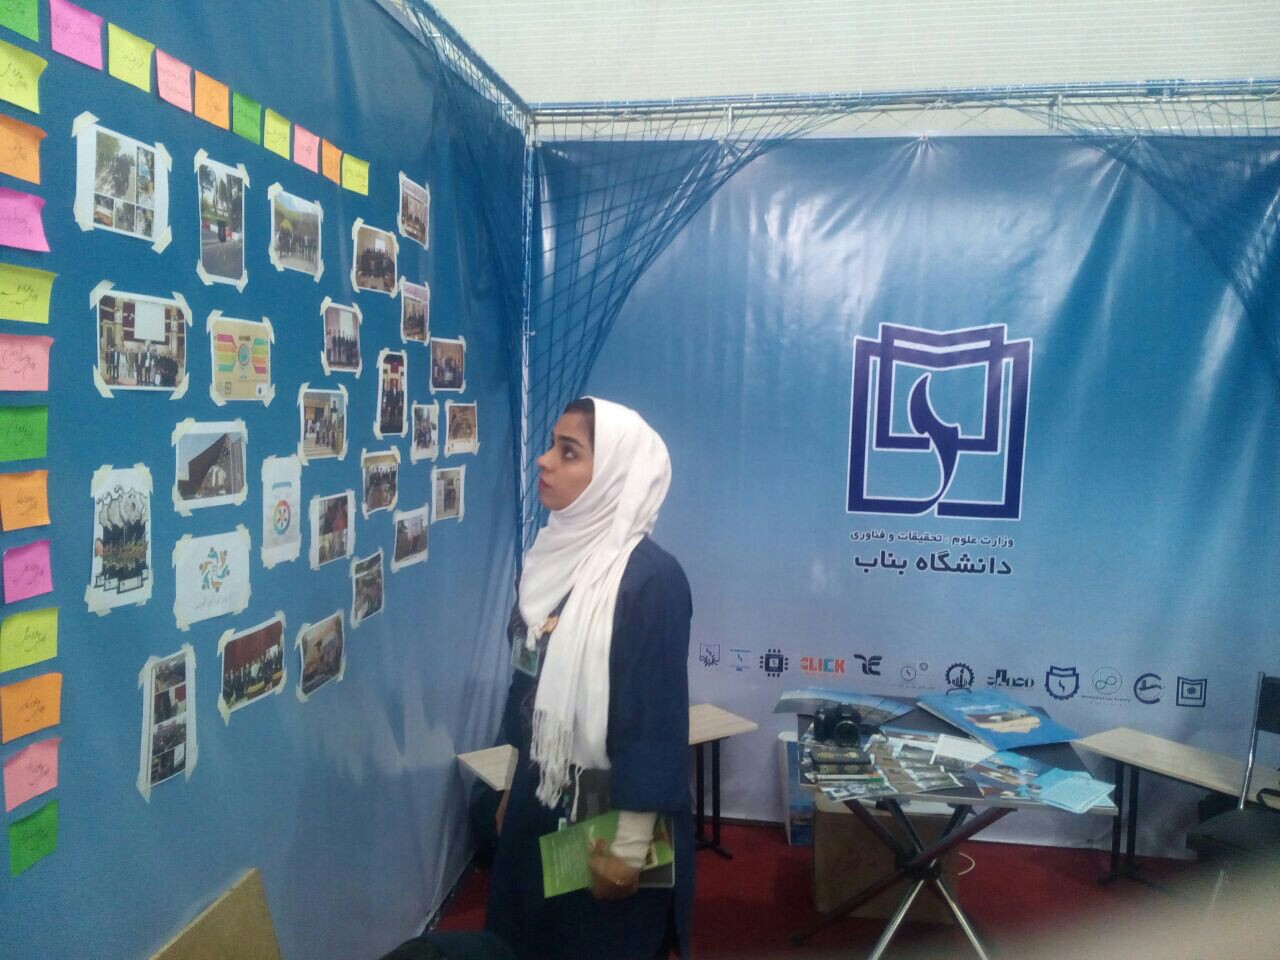 حضور دانشجویان خارجی در جشنواره حرکت نماد اطمینان به فناوری ایرانی است